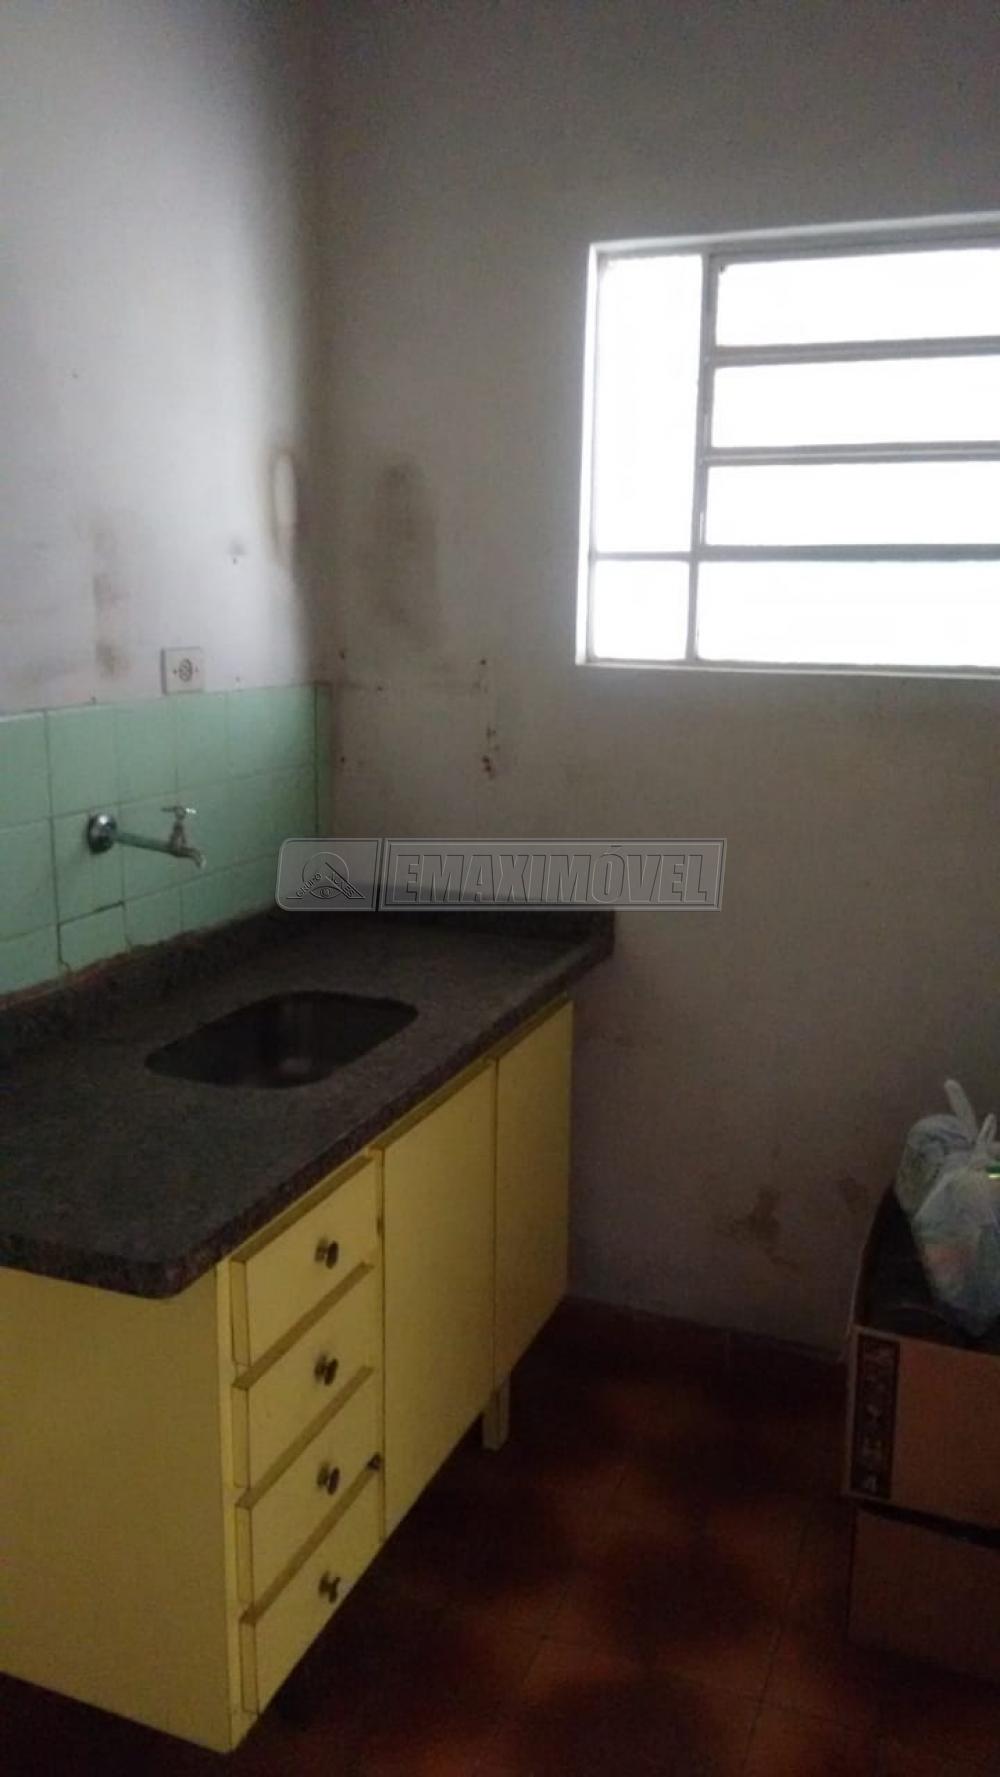 Comprar Casa / em Bairros em Sorocaba R$ 210.000,00 - Foto 2